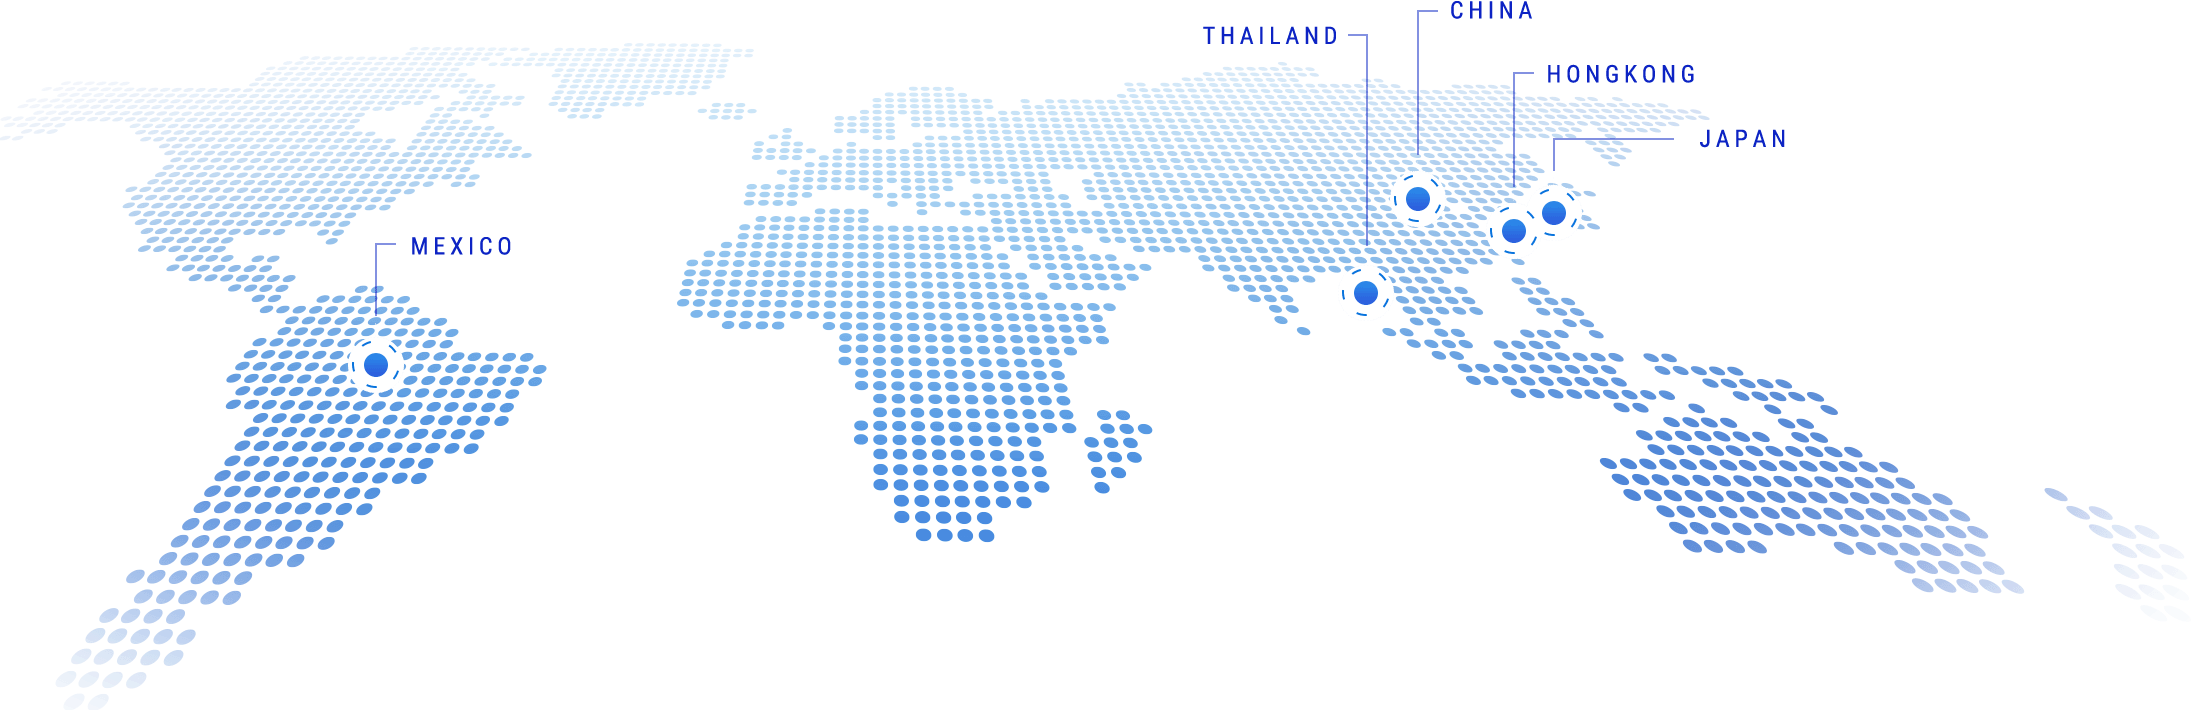 グローバル拠点の地図